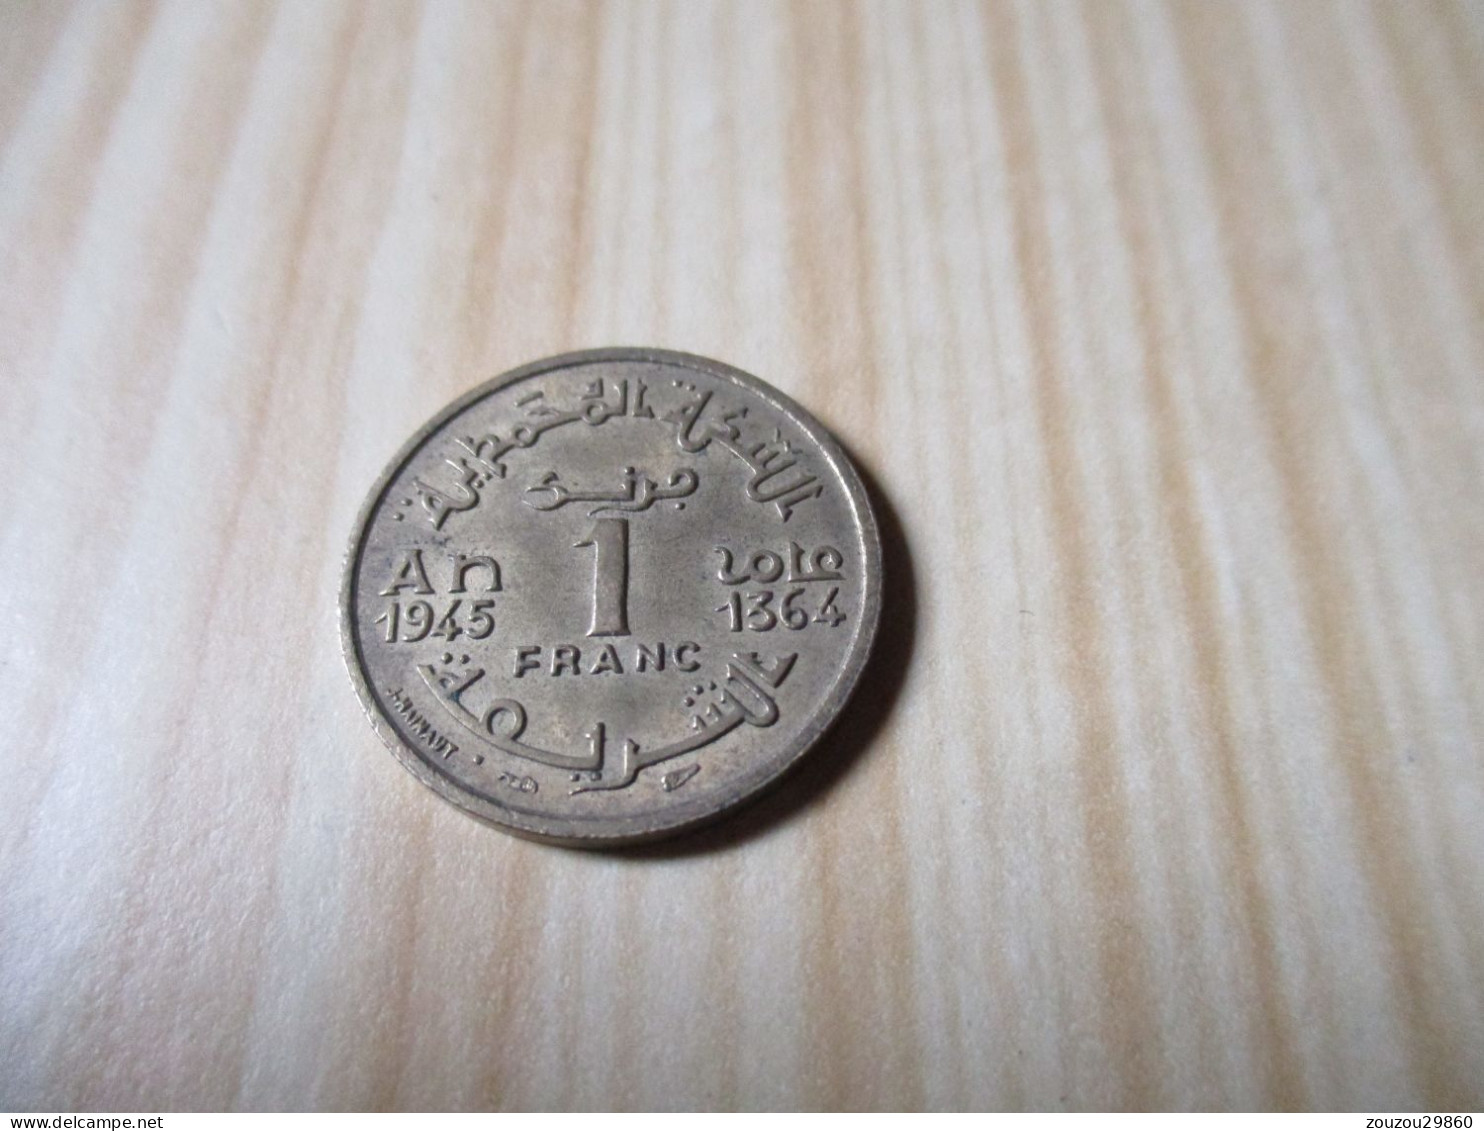 Maroc - 1 Franc Mohammed V 1945.N°747. - Marruecos